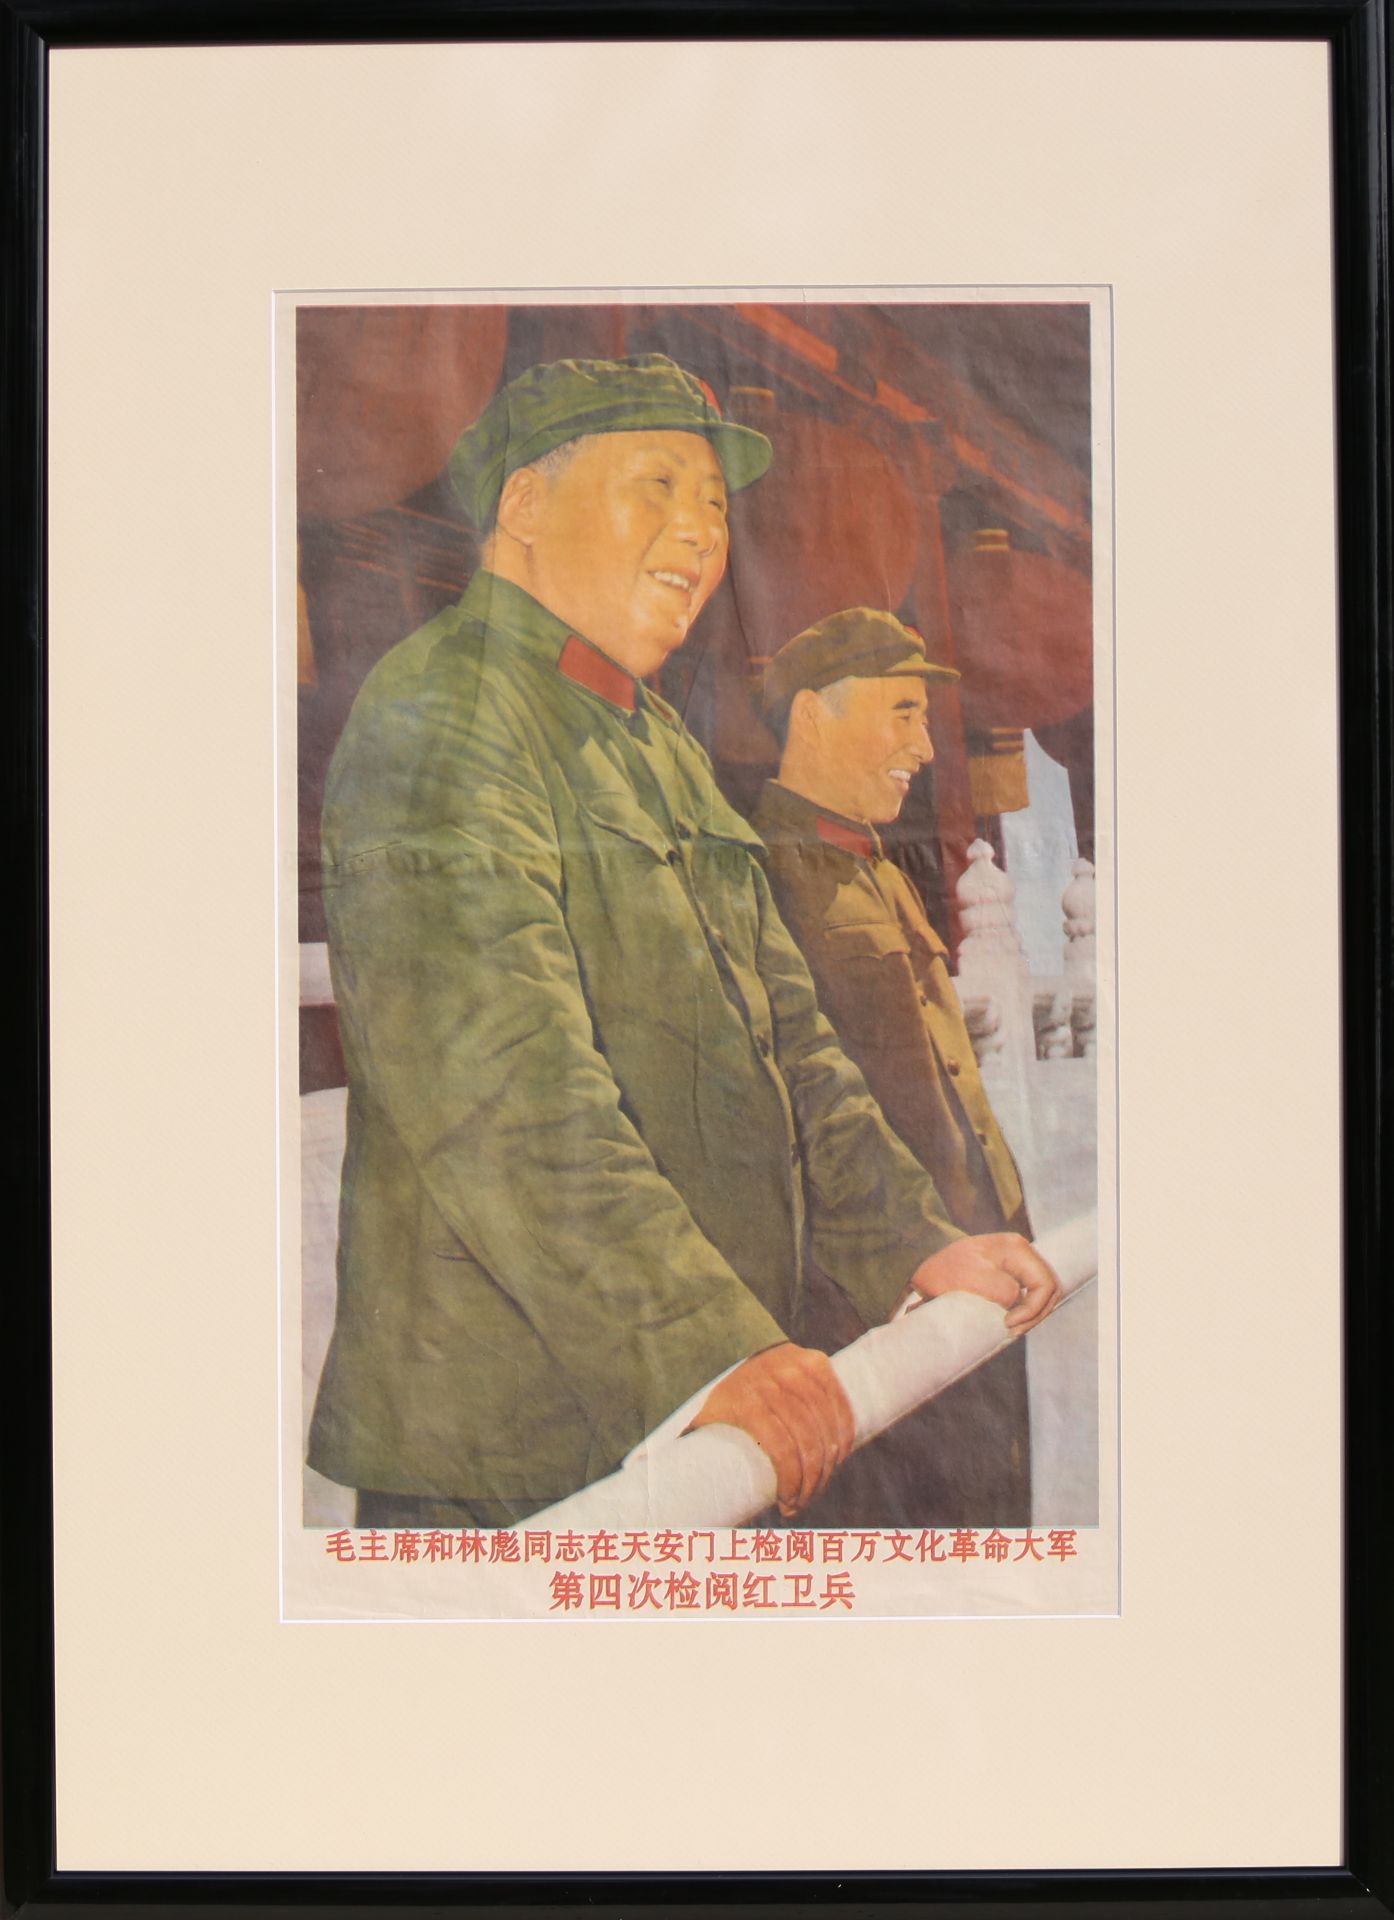 17 Affiches de propagande de la révolution culturelle chinoise Encadrée 75cm x 52cm - Image 10 of 17